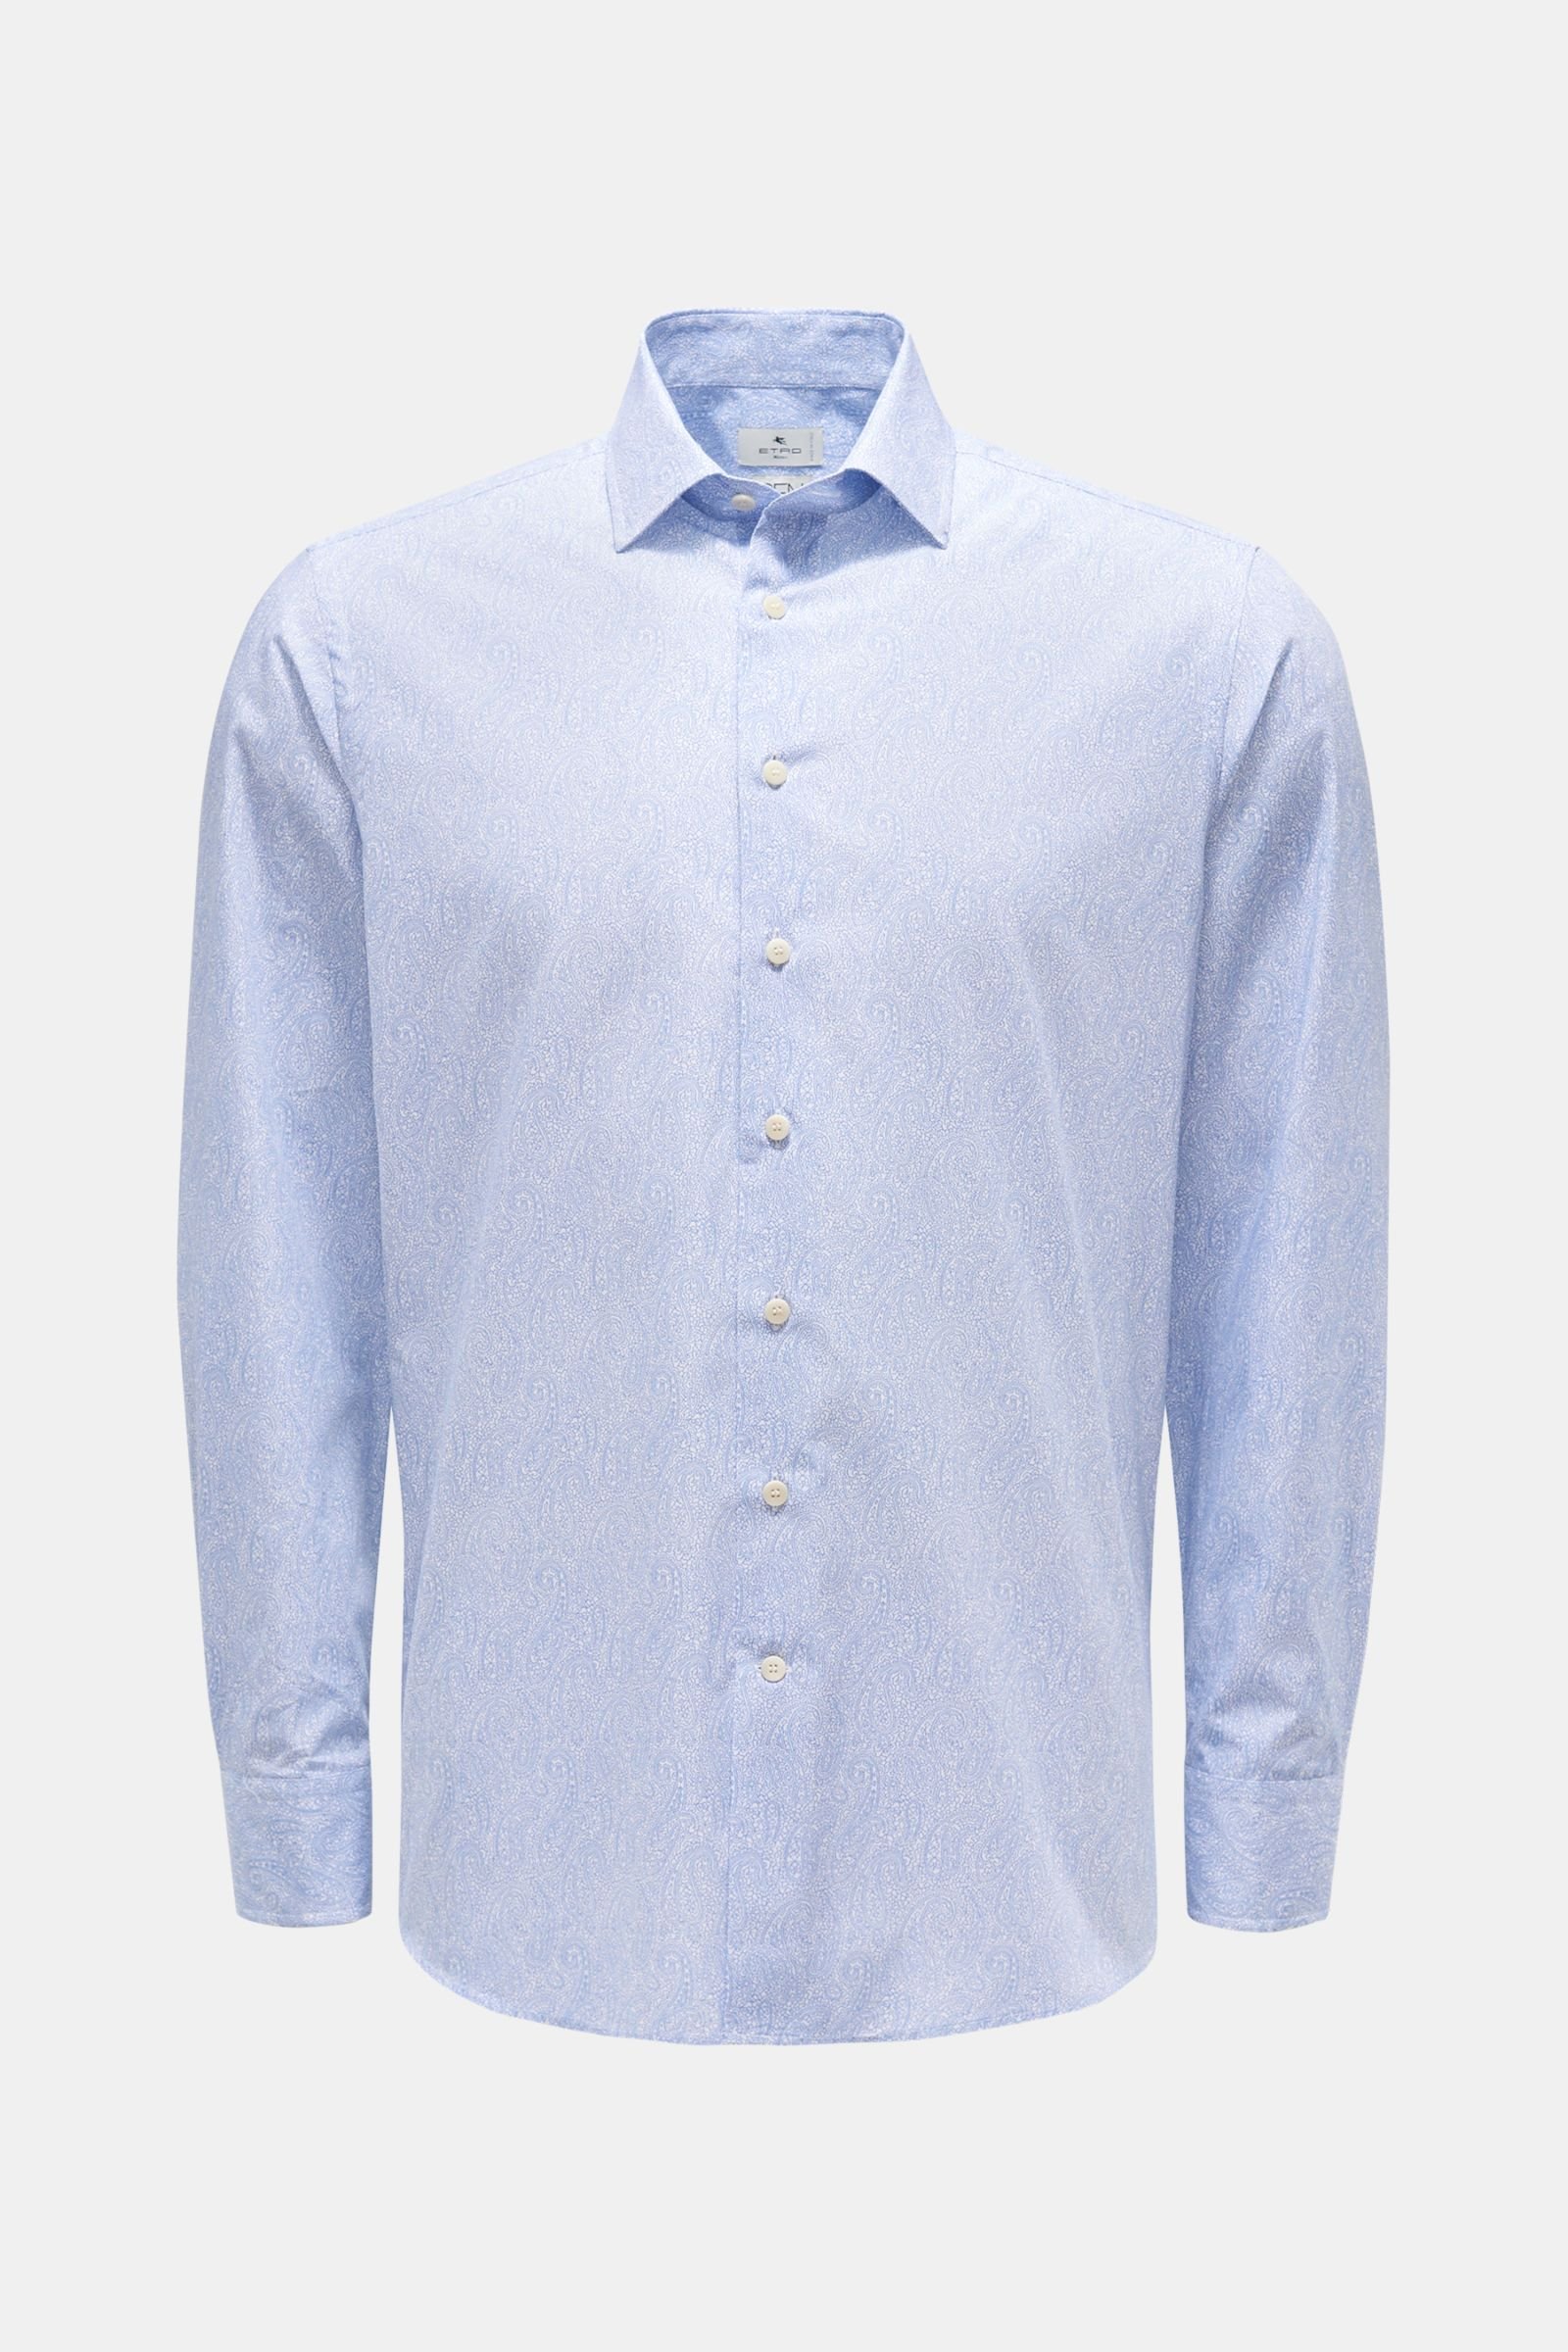 Casual Hemd schmaler Kragen blau/weiß gemustert